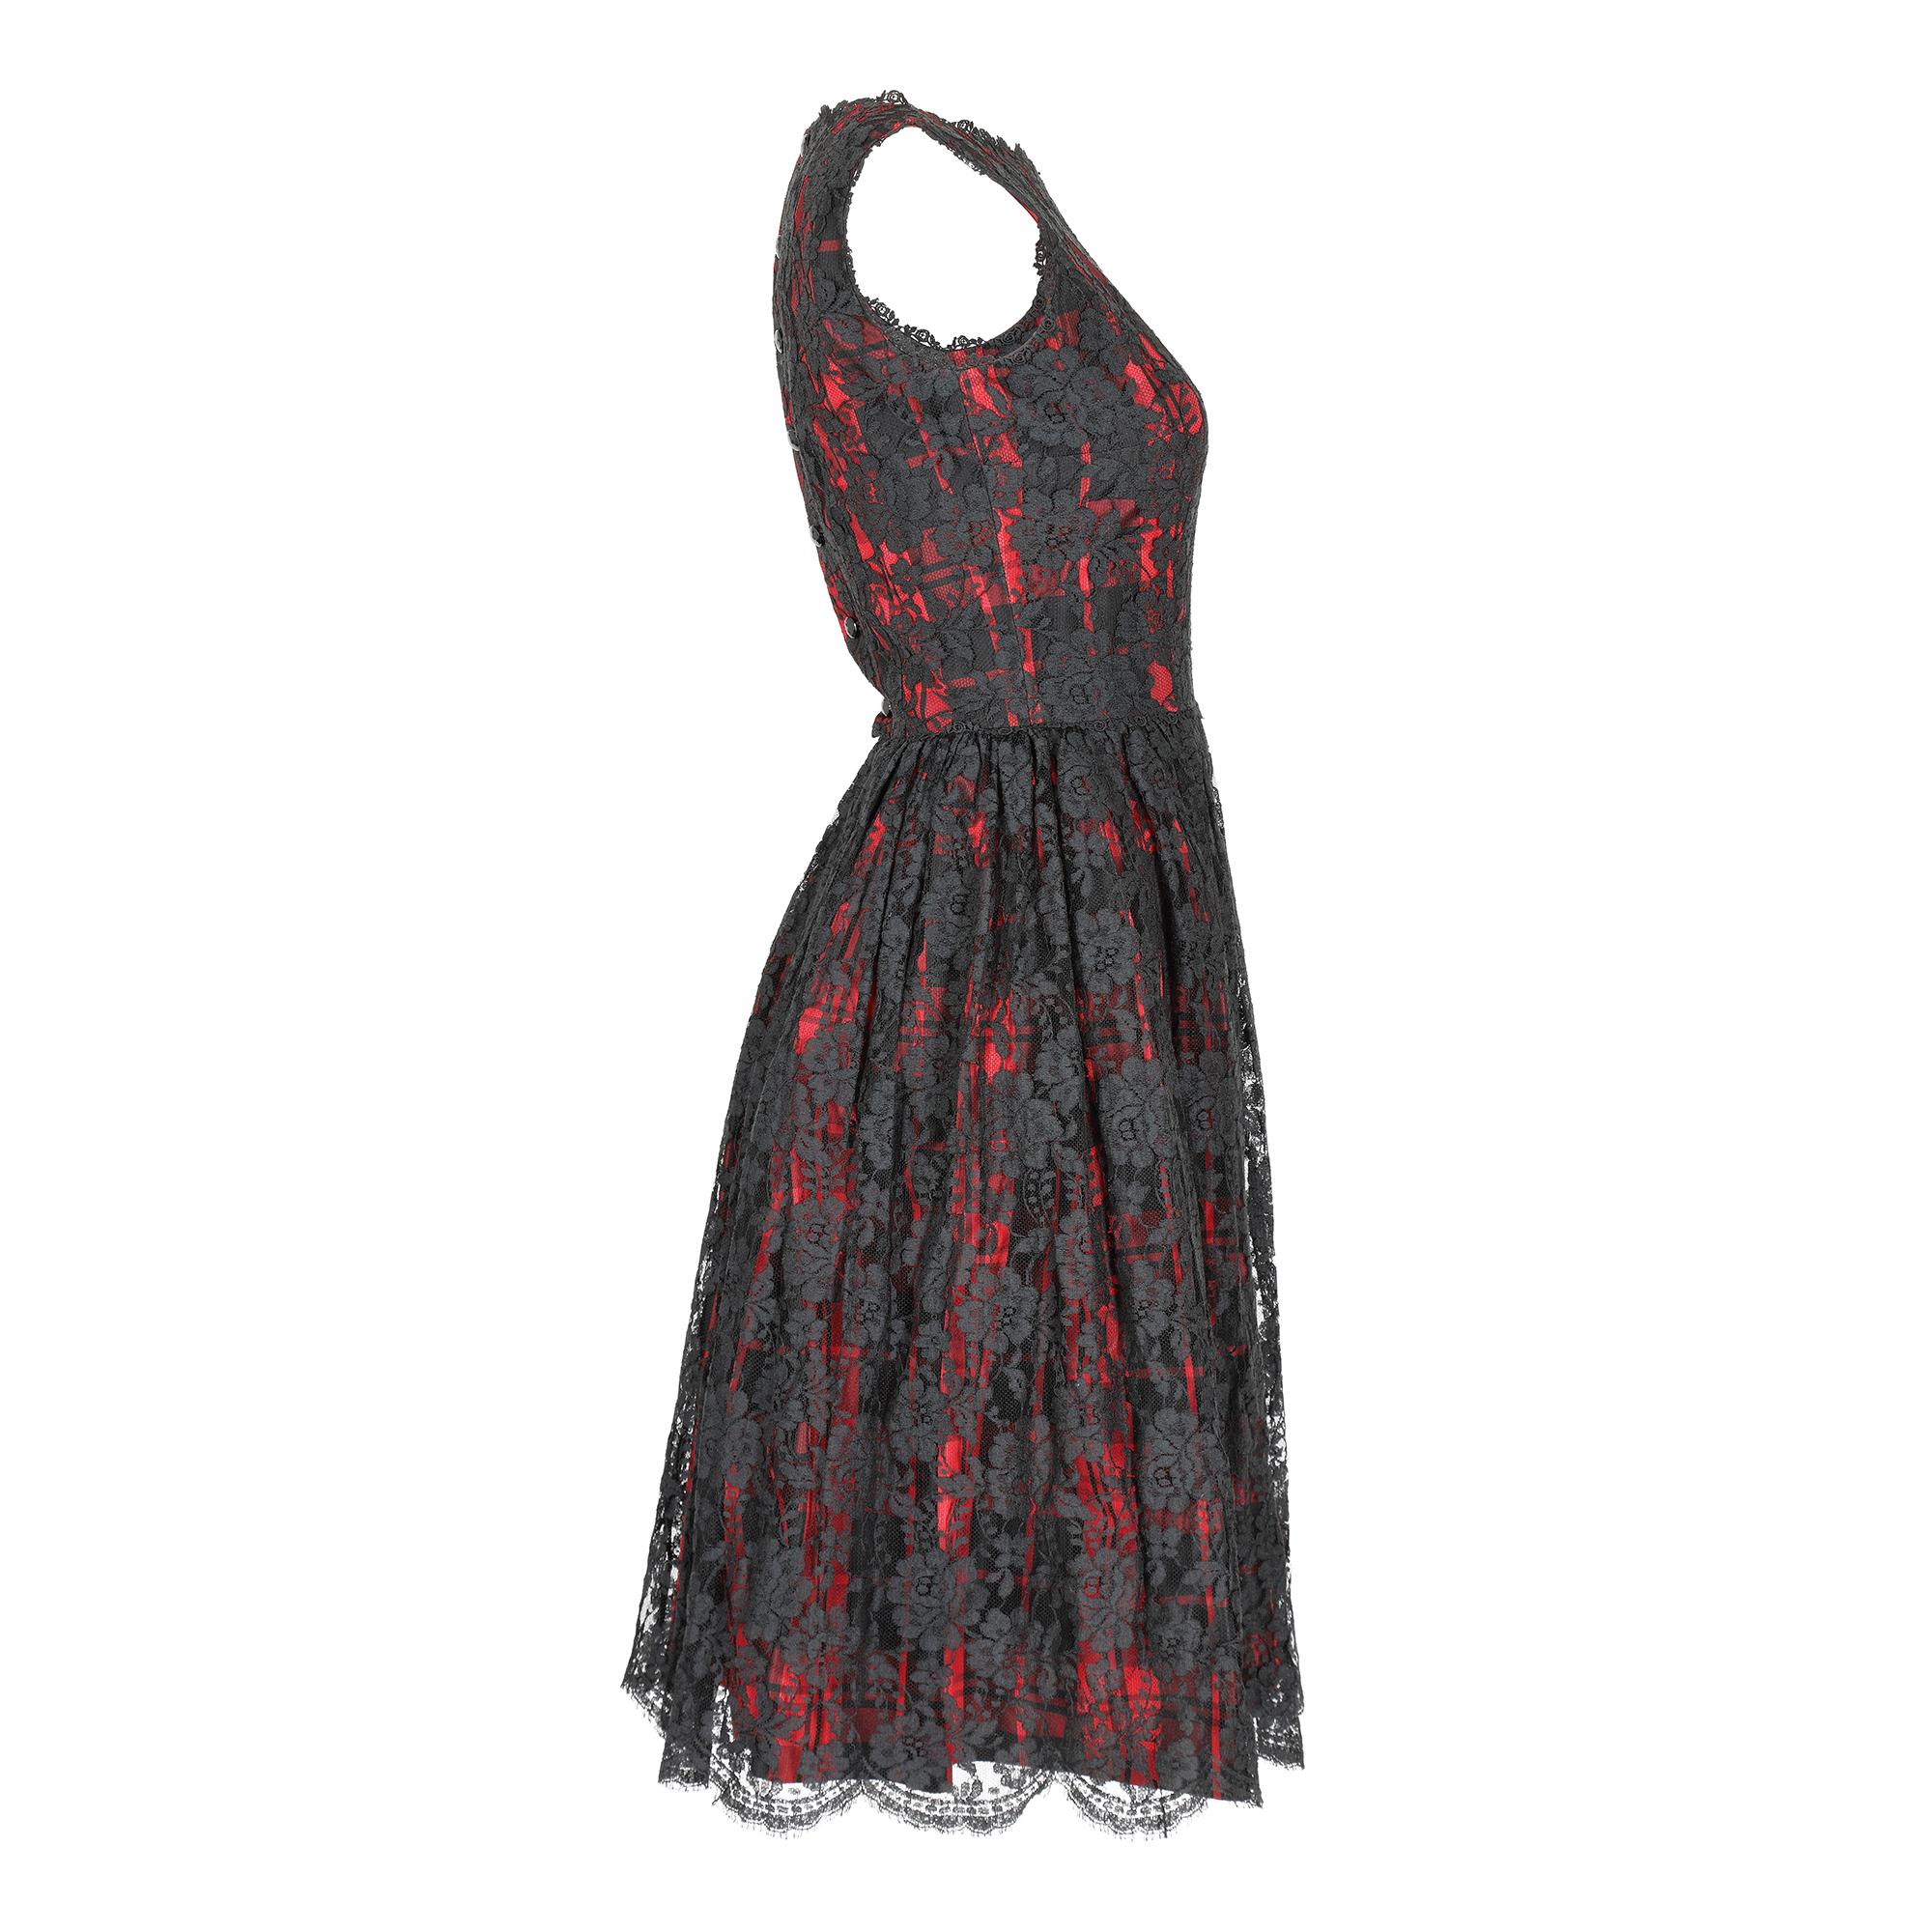 Une belle robe de soirée vintage qui peut être datée exactement de 1962 par le label - Lang originals, qui était une marque de la maison de couture américaine Jean Lang et fondée en 1916. La robe est un joli motif à carreaux noirs et rouges de